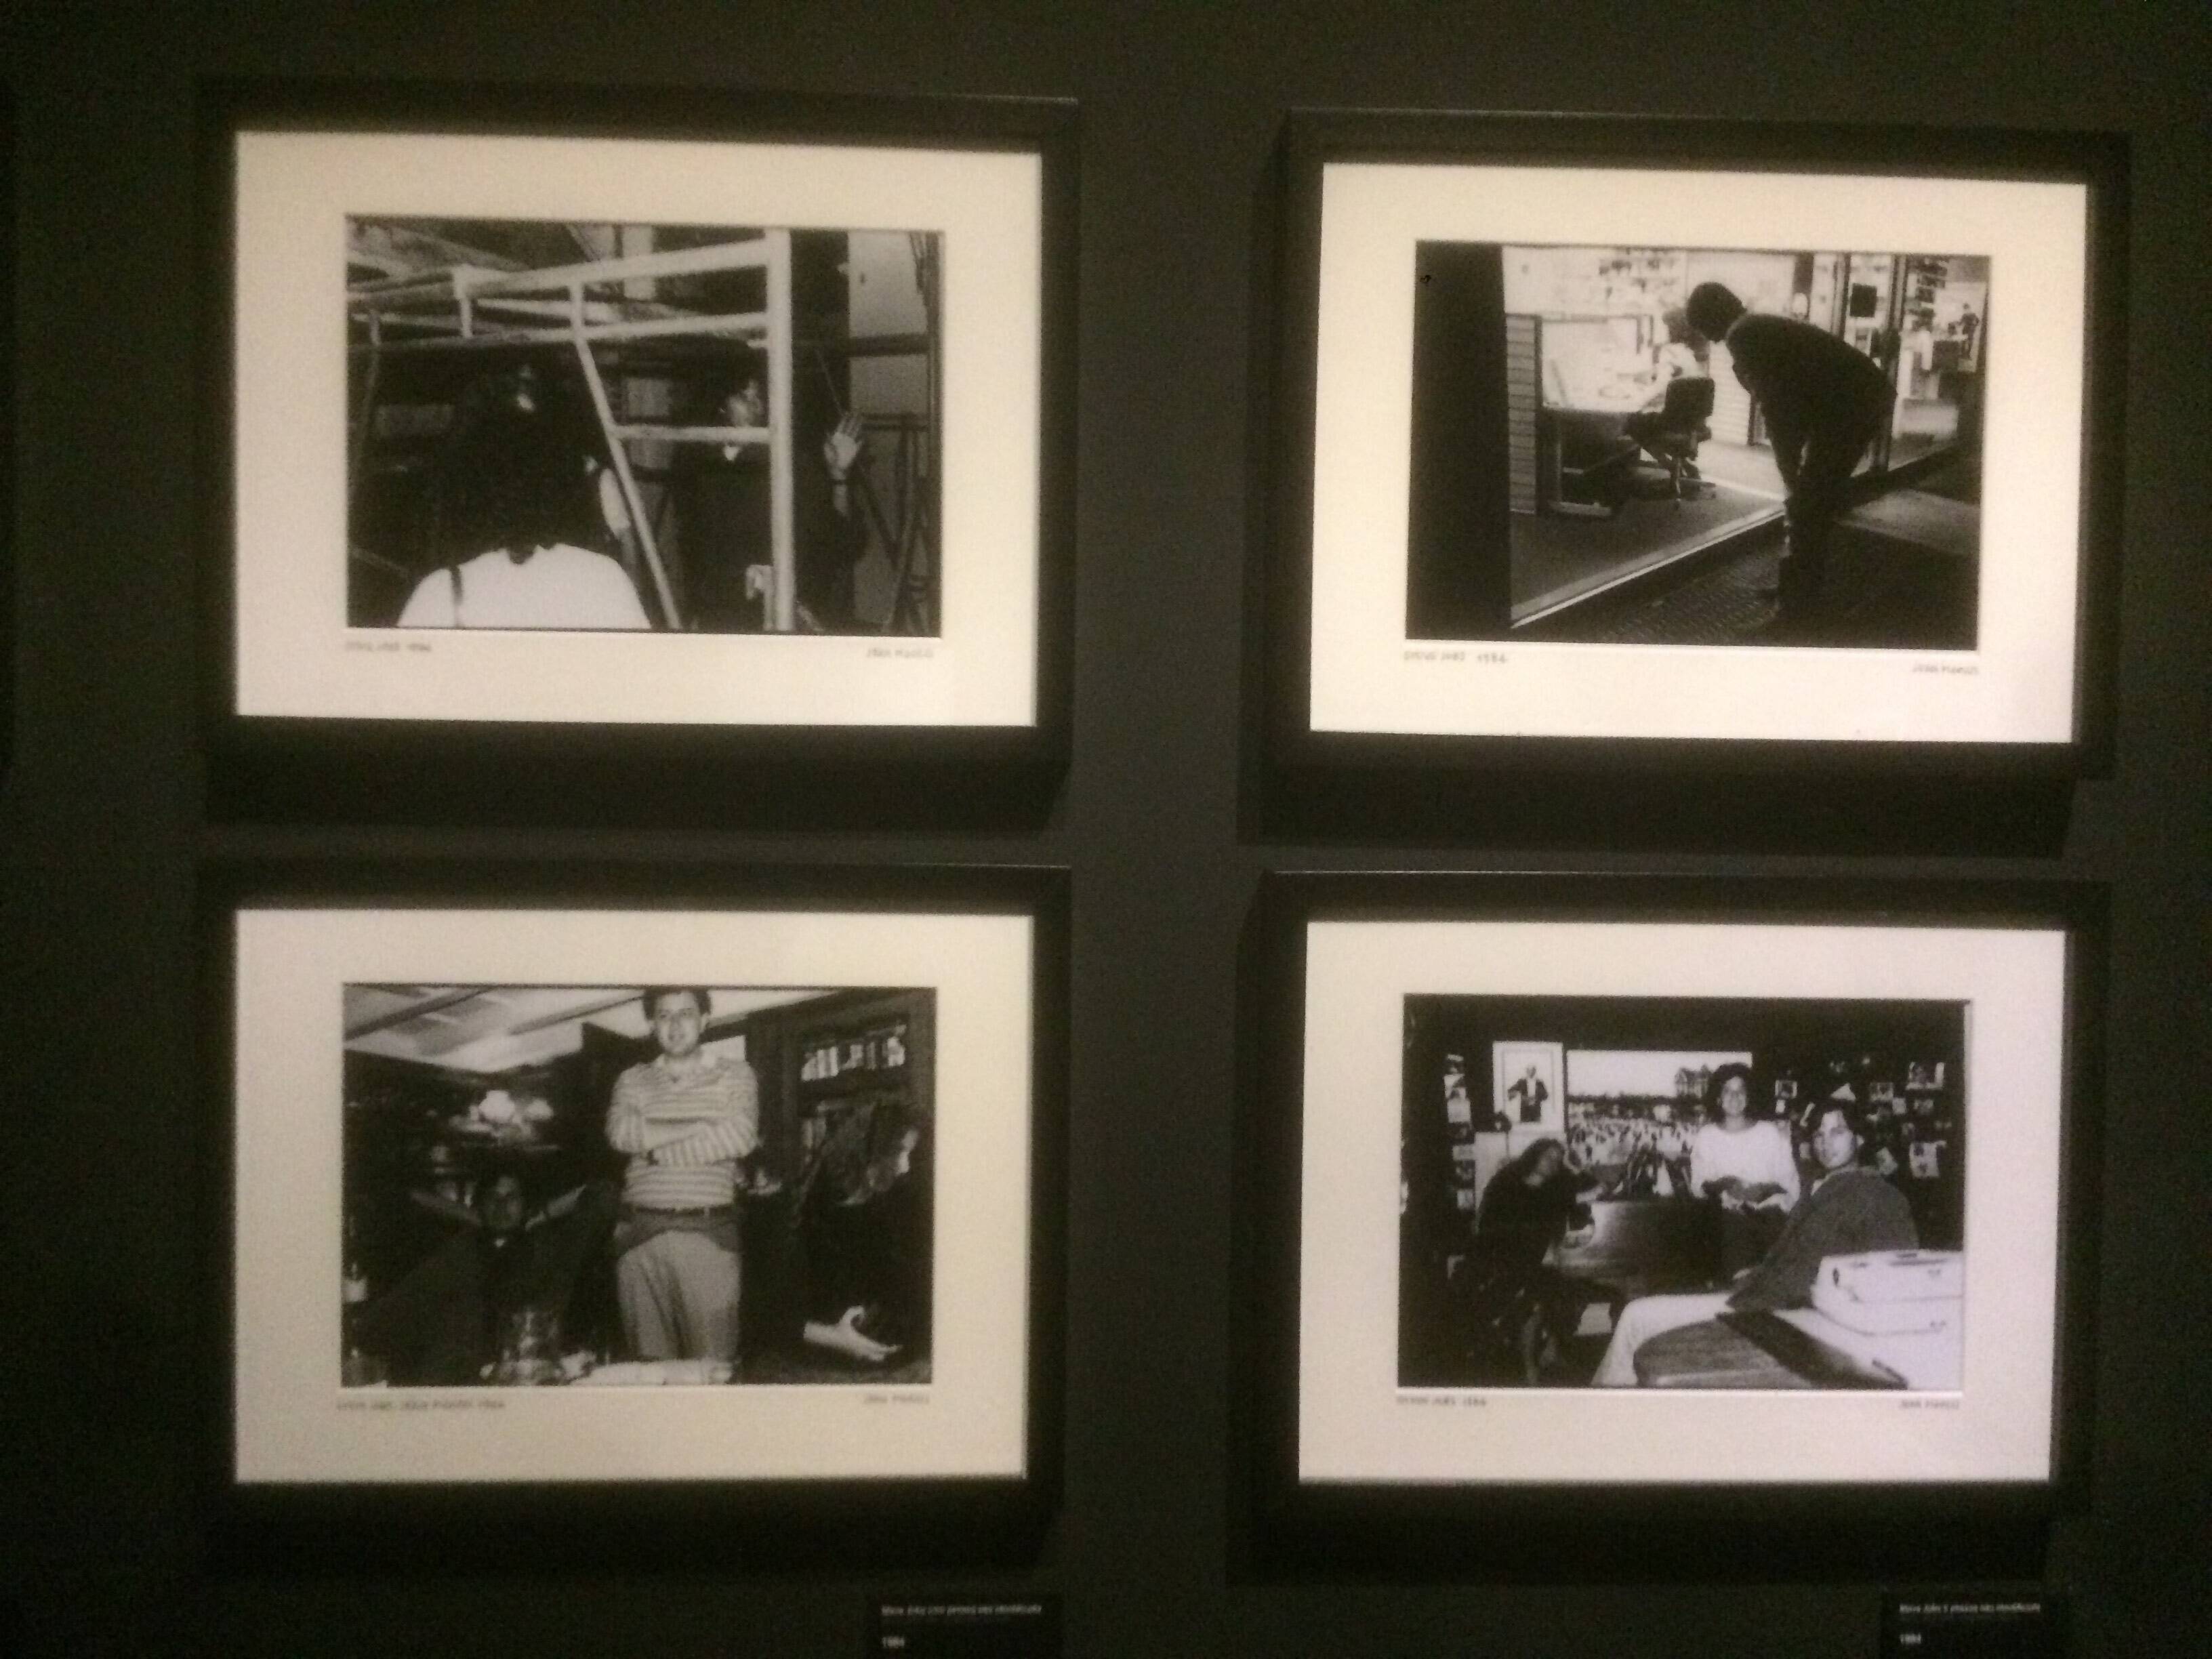 Fotos da exposição "Steve Jobs, o visionário" no Museu da Imagem e do Som de São Paulo. Foto: Caio Menezes